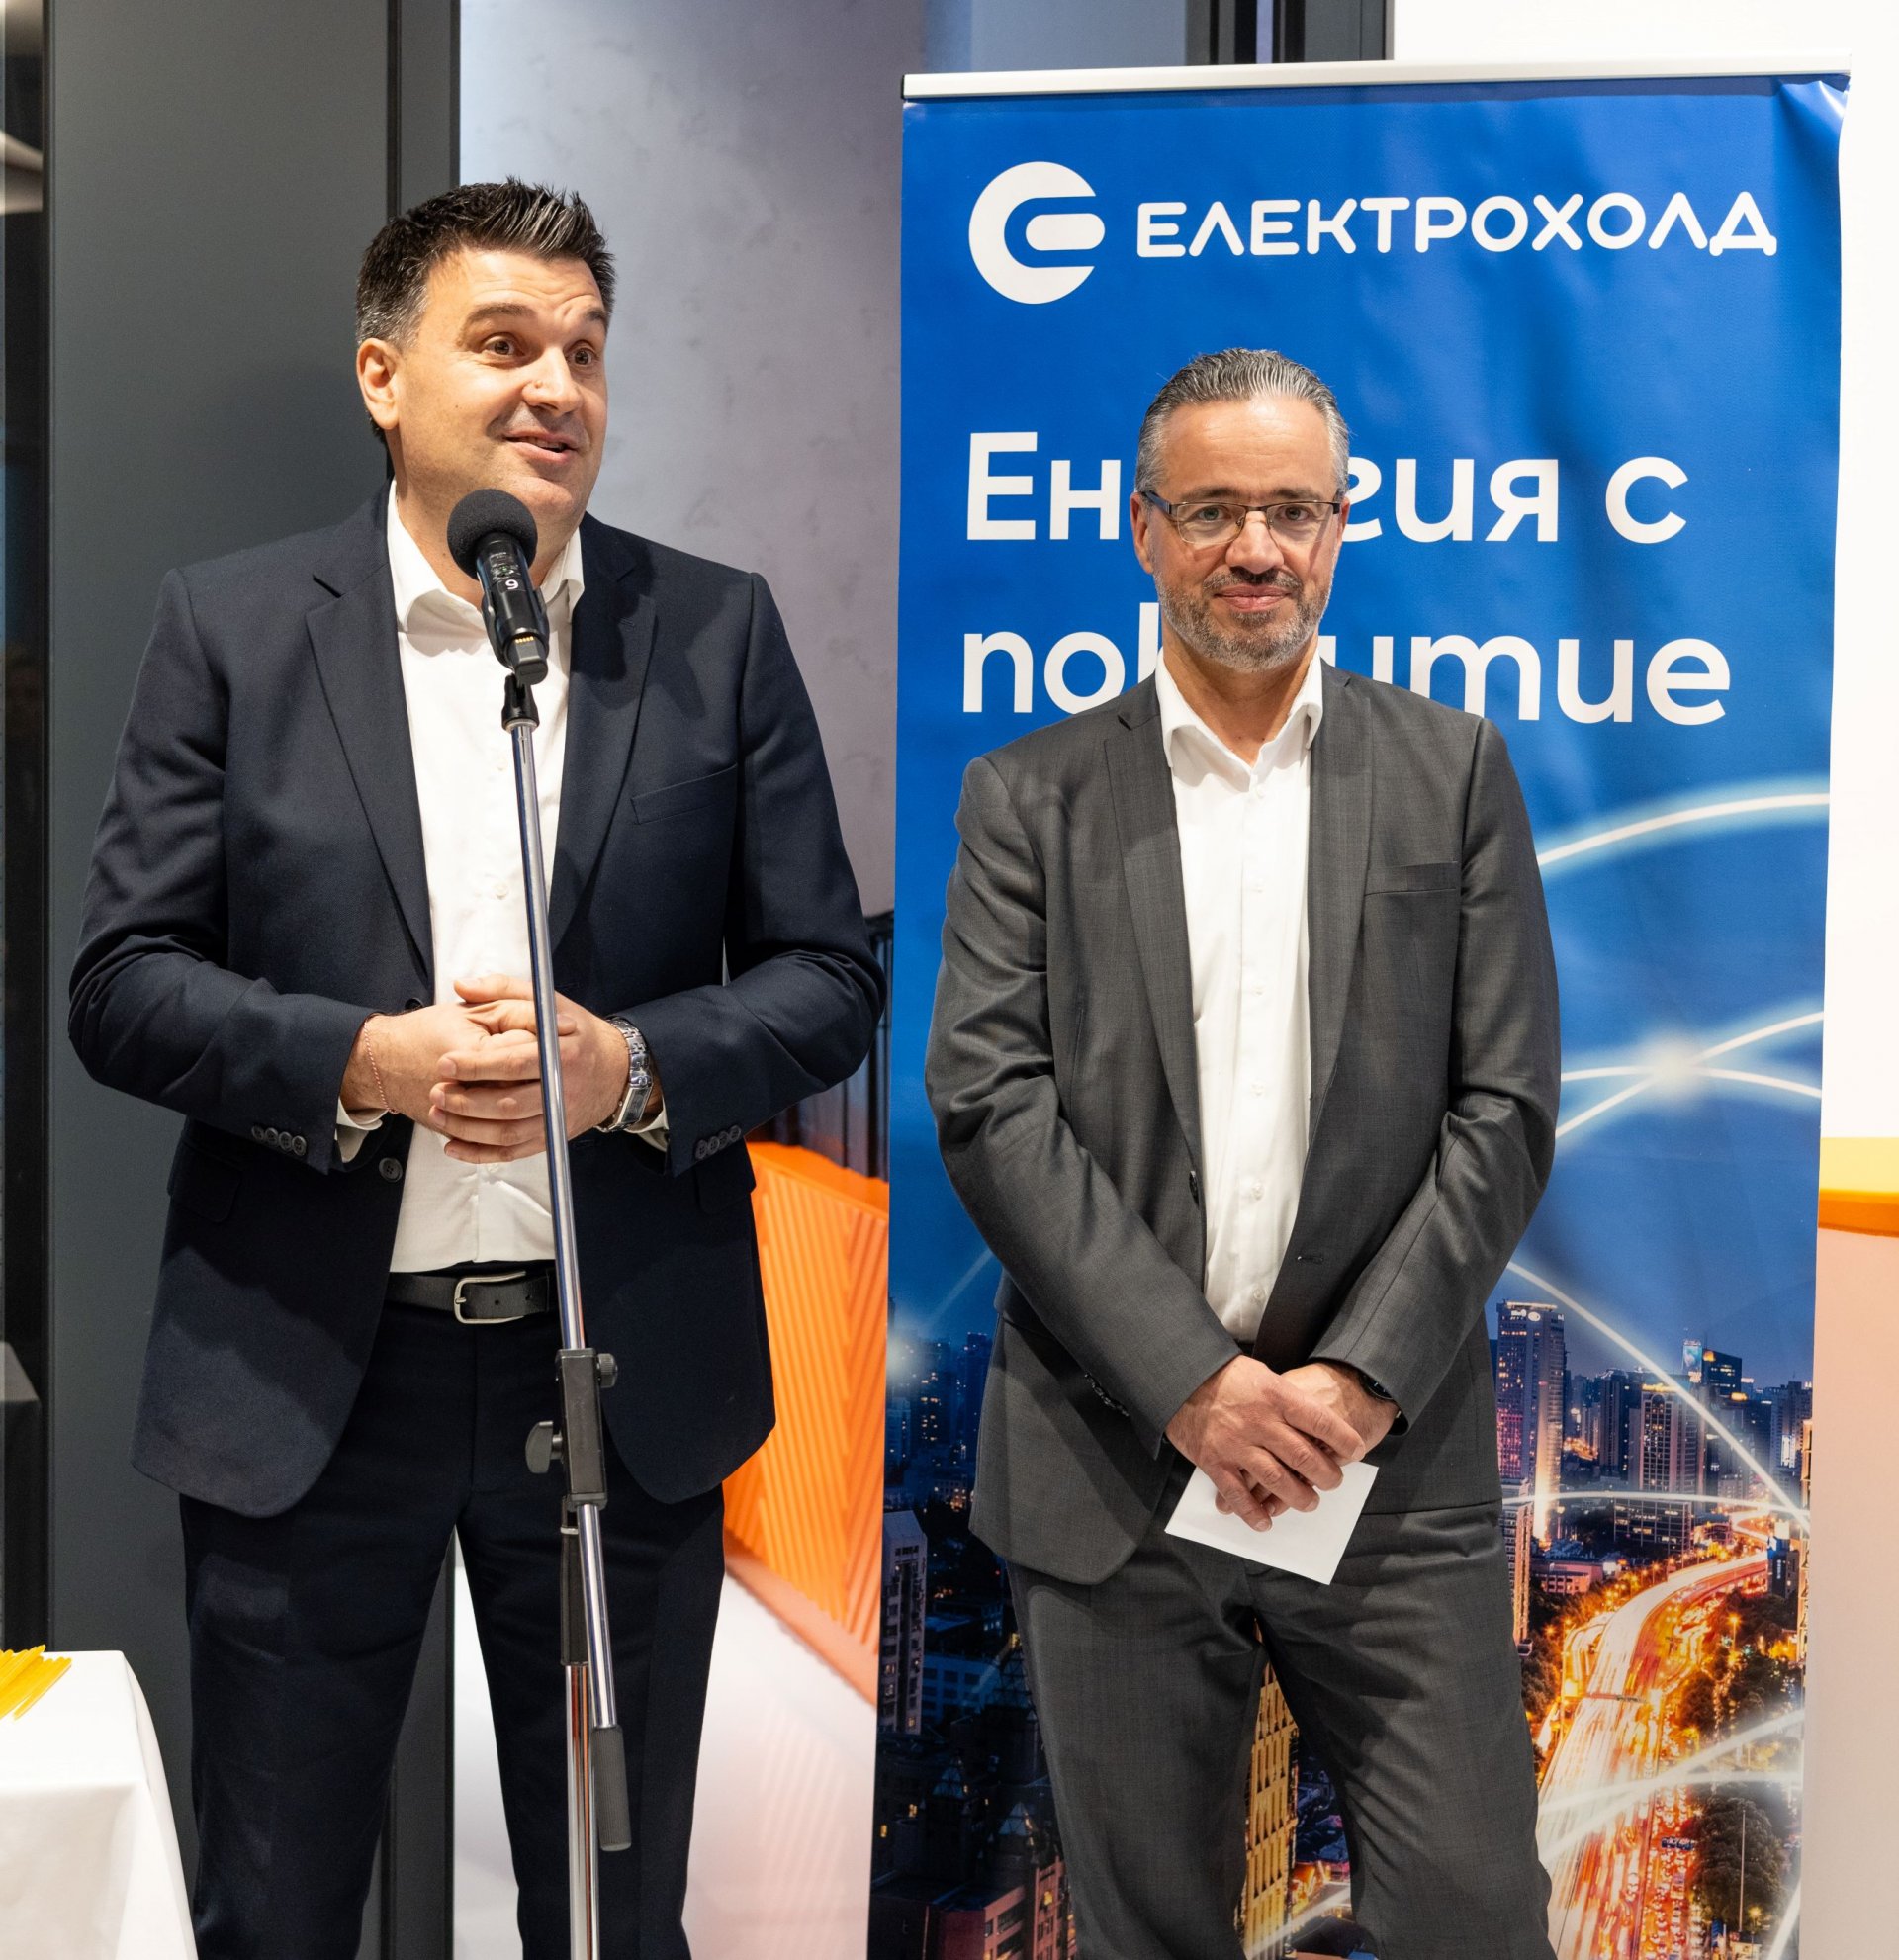 Владимир Дичев, главен търговски директор на Електрохолд България (вляво), Карел Крал, главен изпълнителен директор на Електрохолд България (вдясно)